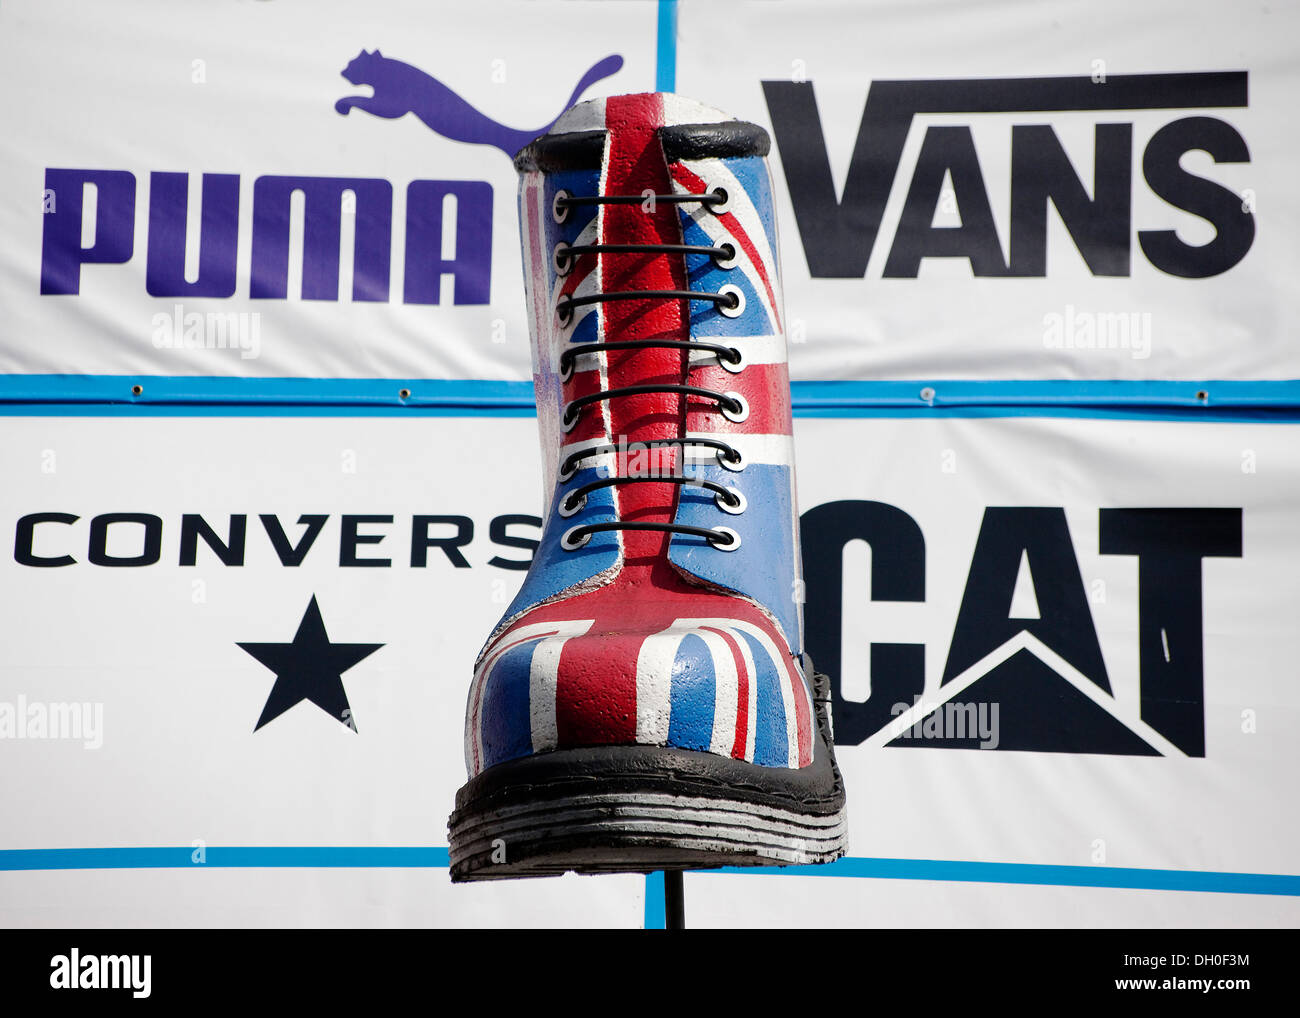 Giant più grandi di vita replica Dr Martin boot con unione bandiera design  con il logo di Puma furgoni Converse Cat stampata dietro Foto stock - Alamy